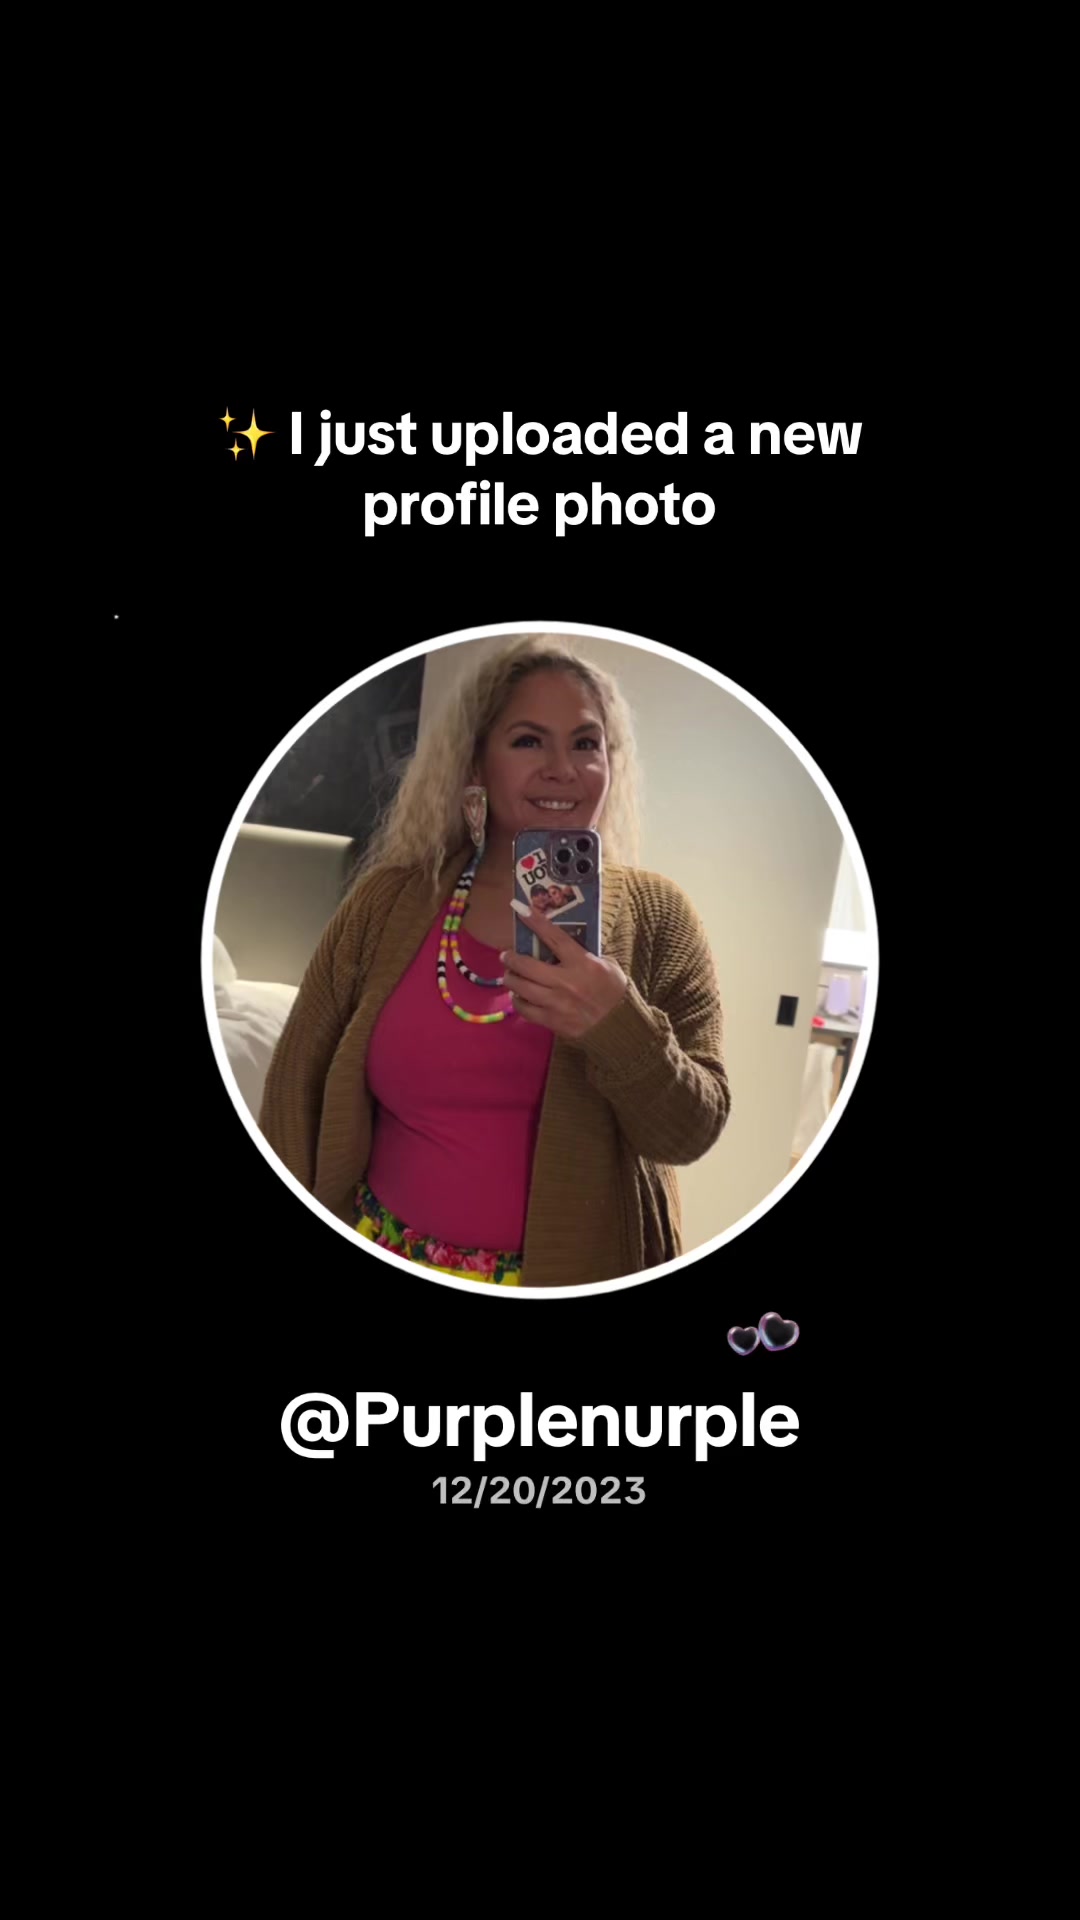 @Purplenurple